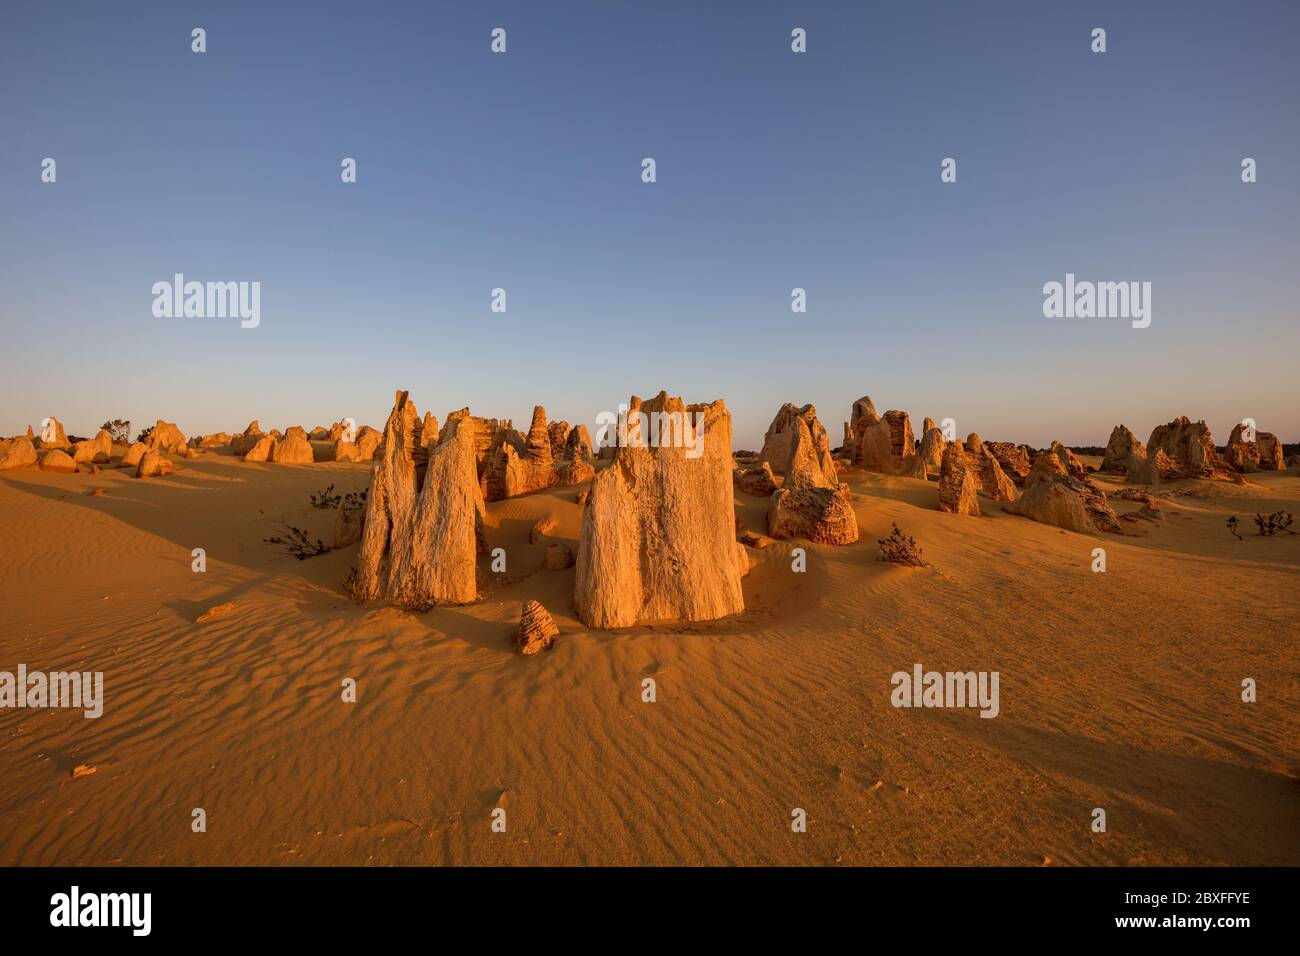 Le pile di calcare si crogiolano nella luce del tardo pomeriggio nel deserto dei Pinnacoli nel parco nazionale di Nambung, situato a nord di Perth, nell'Australia occidentale Foto Stock